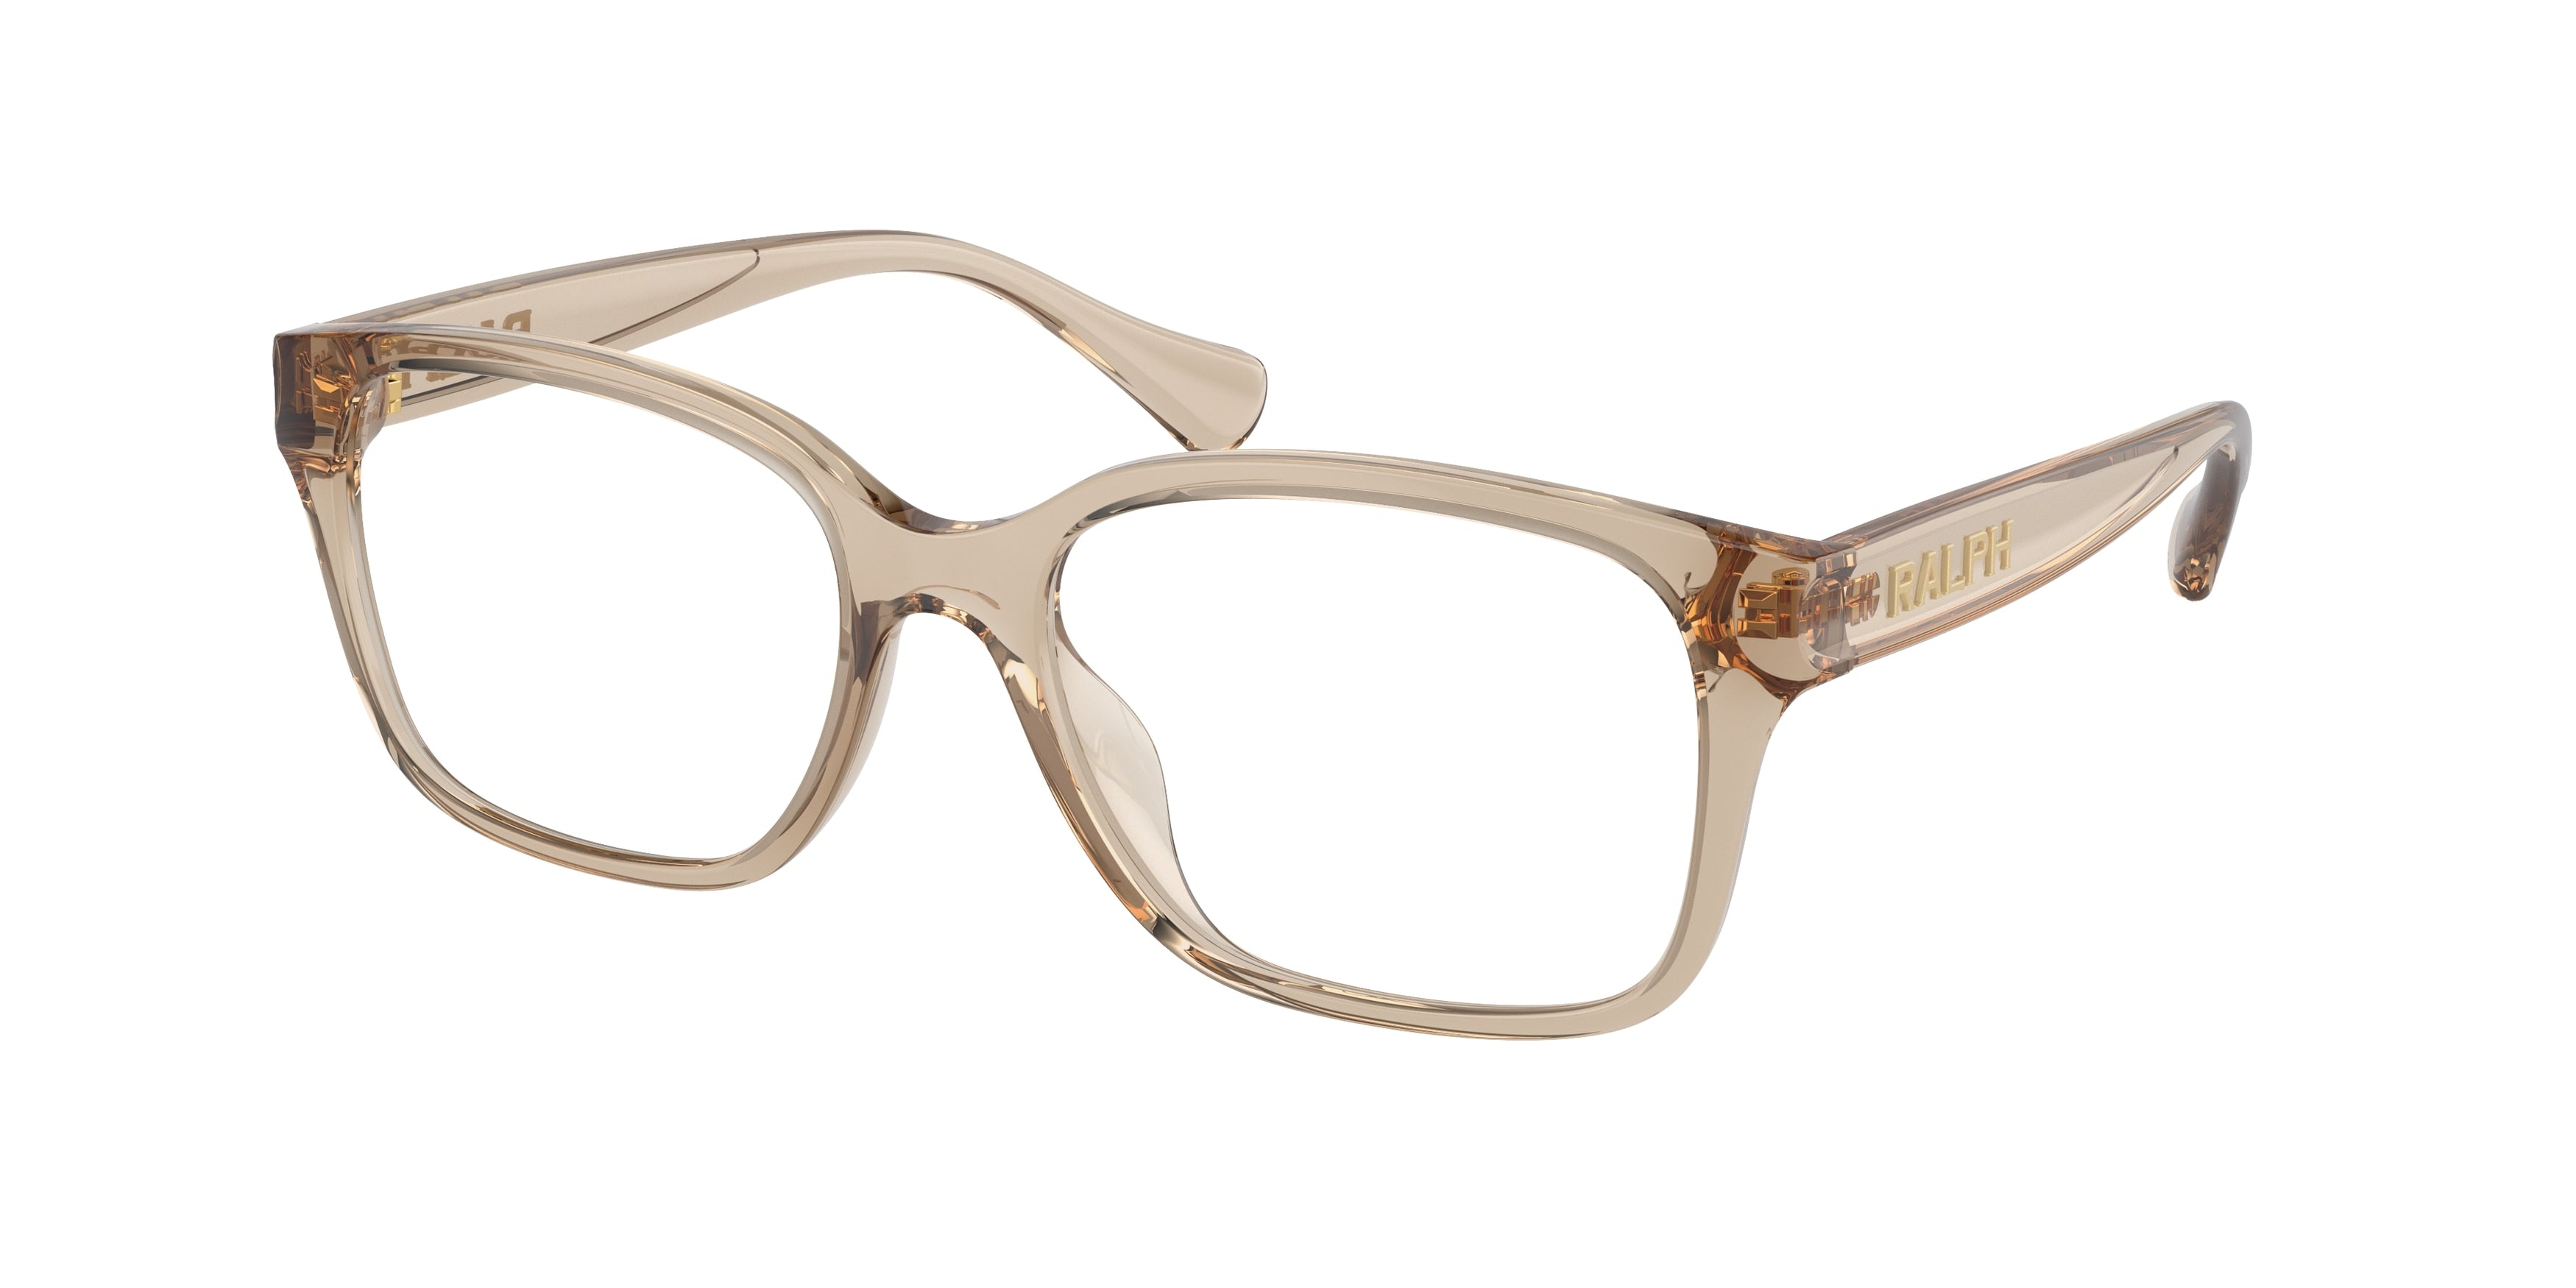 Ralph RA7155U Square Eyeglasses  5802-Shiny Transparent Beige 54-140-17 - Color Map Transparent